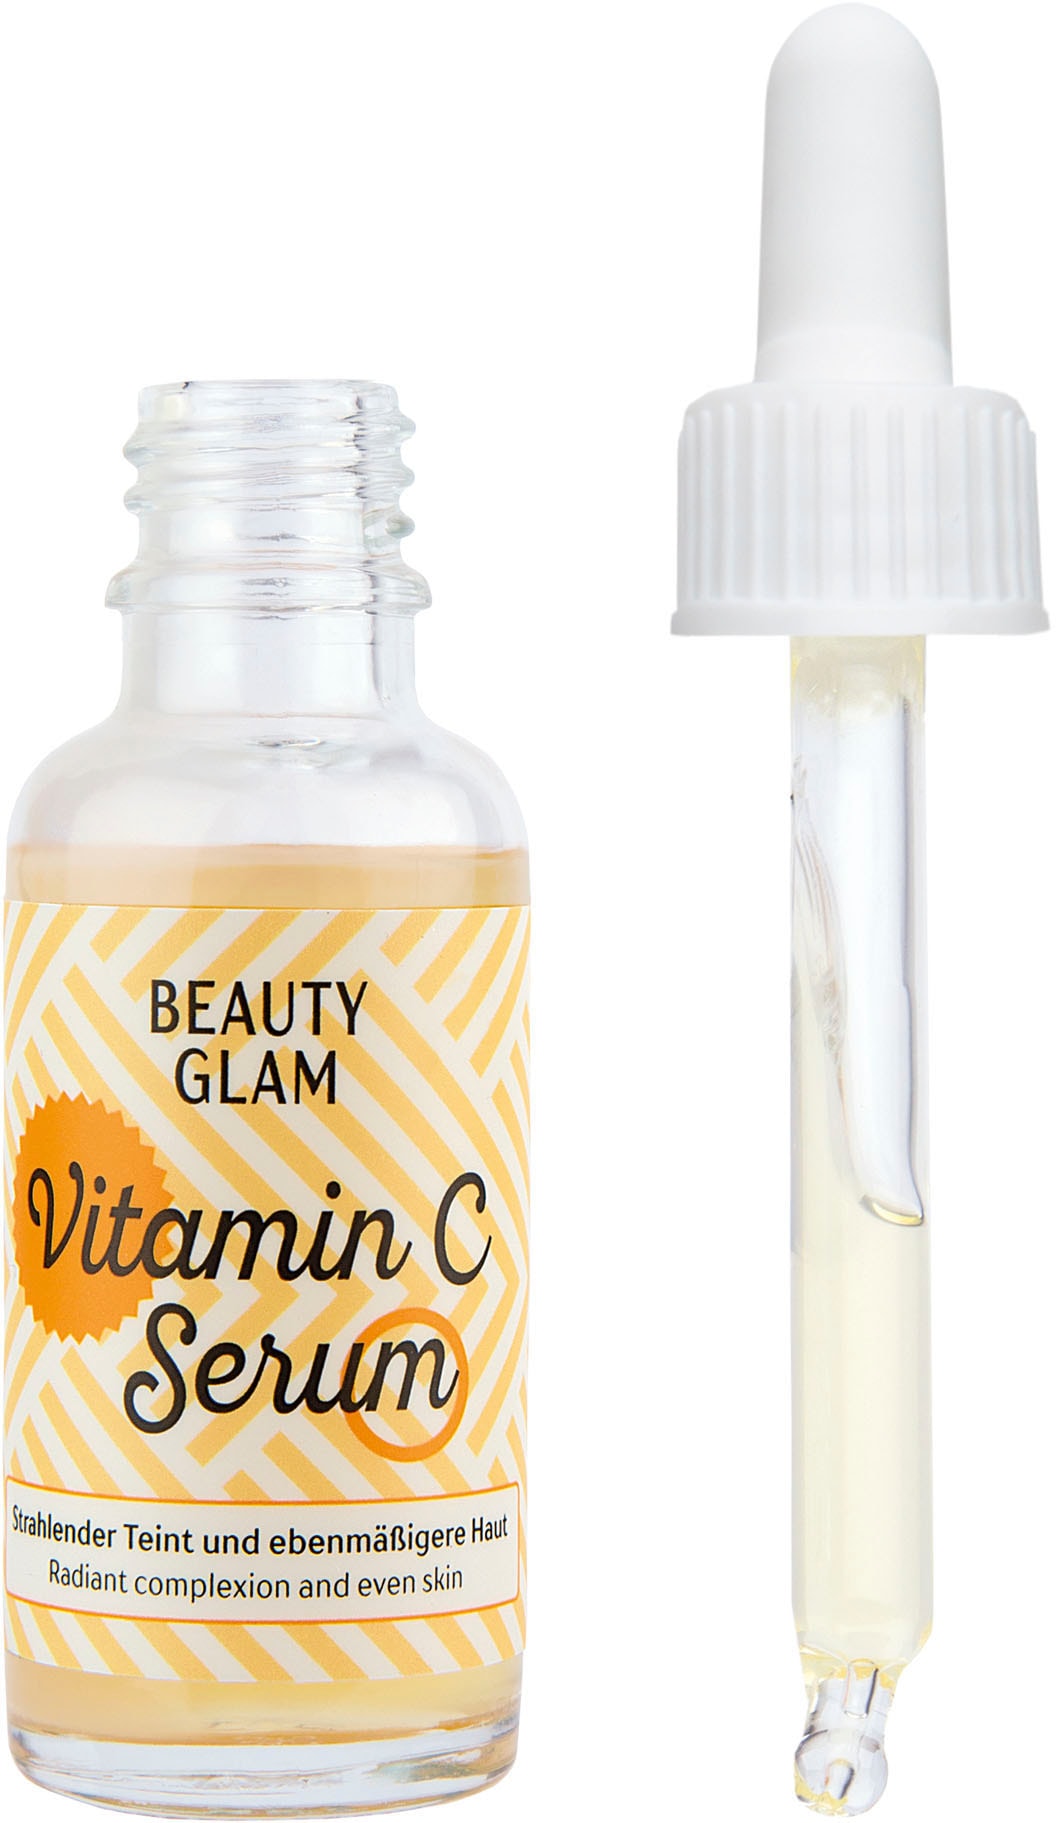 Glam Vitamin bei Serum« OTTOversand GLAM Gesichtsserum BEAUTY C »Beauty